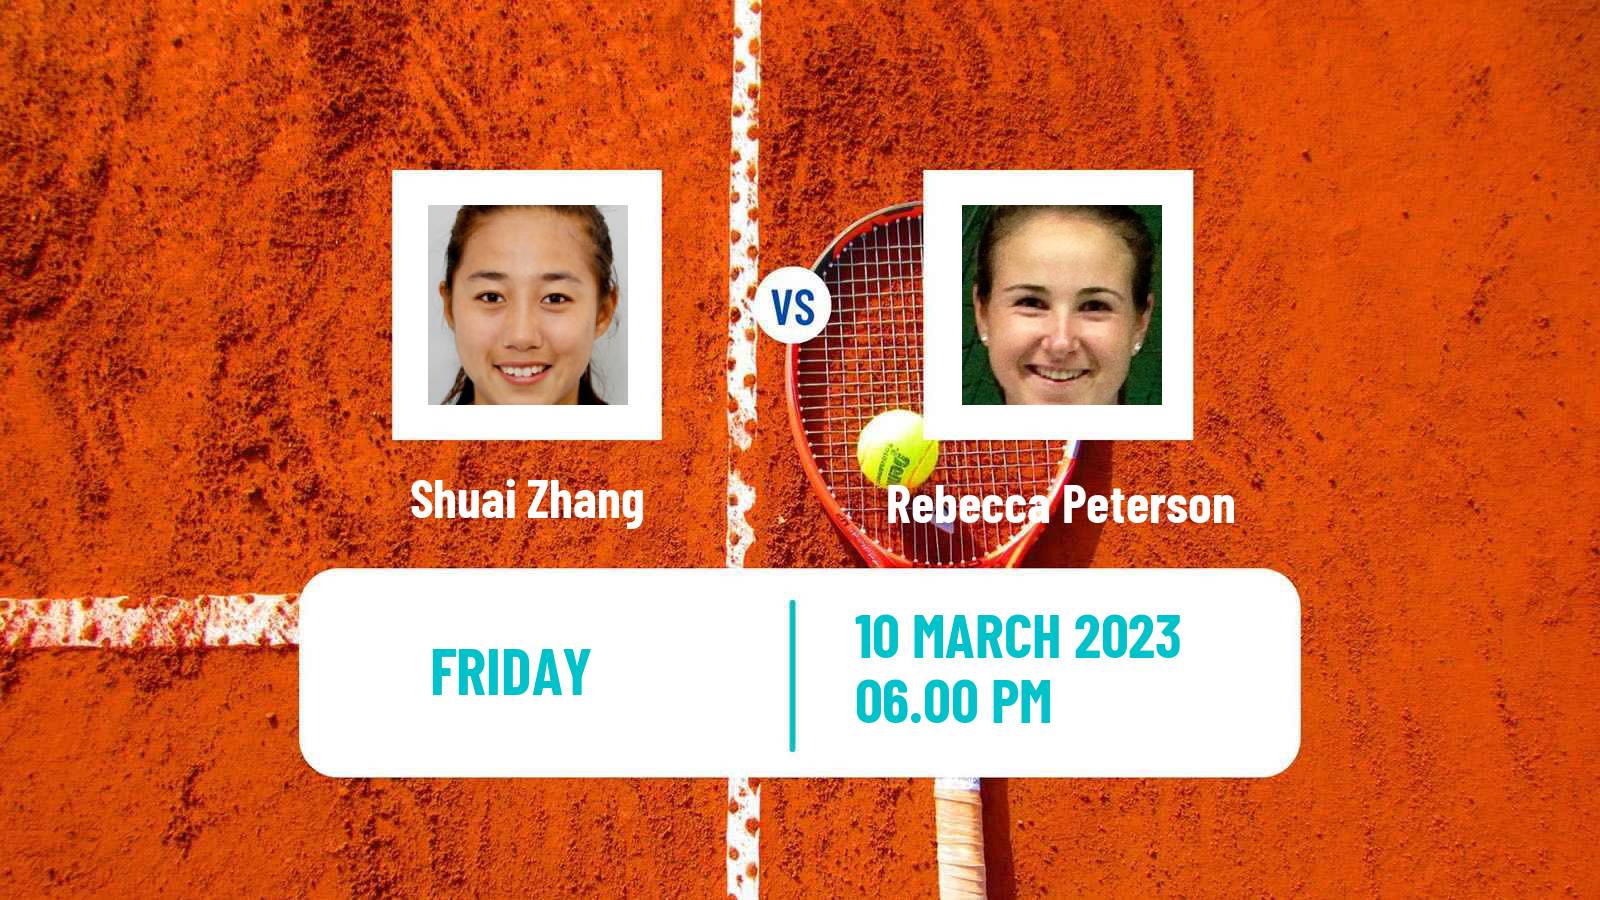 Tennis WTA Indian Wells Shuai Zhang - Rebecca Peterson